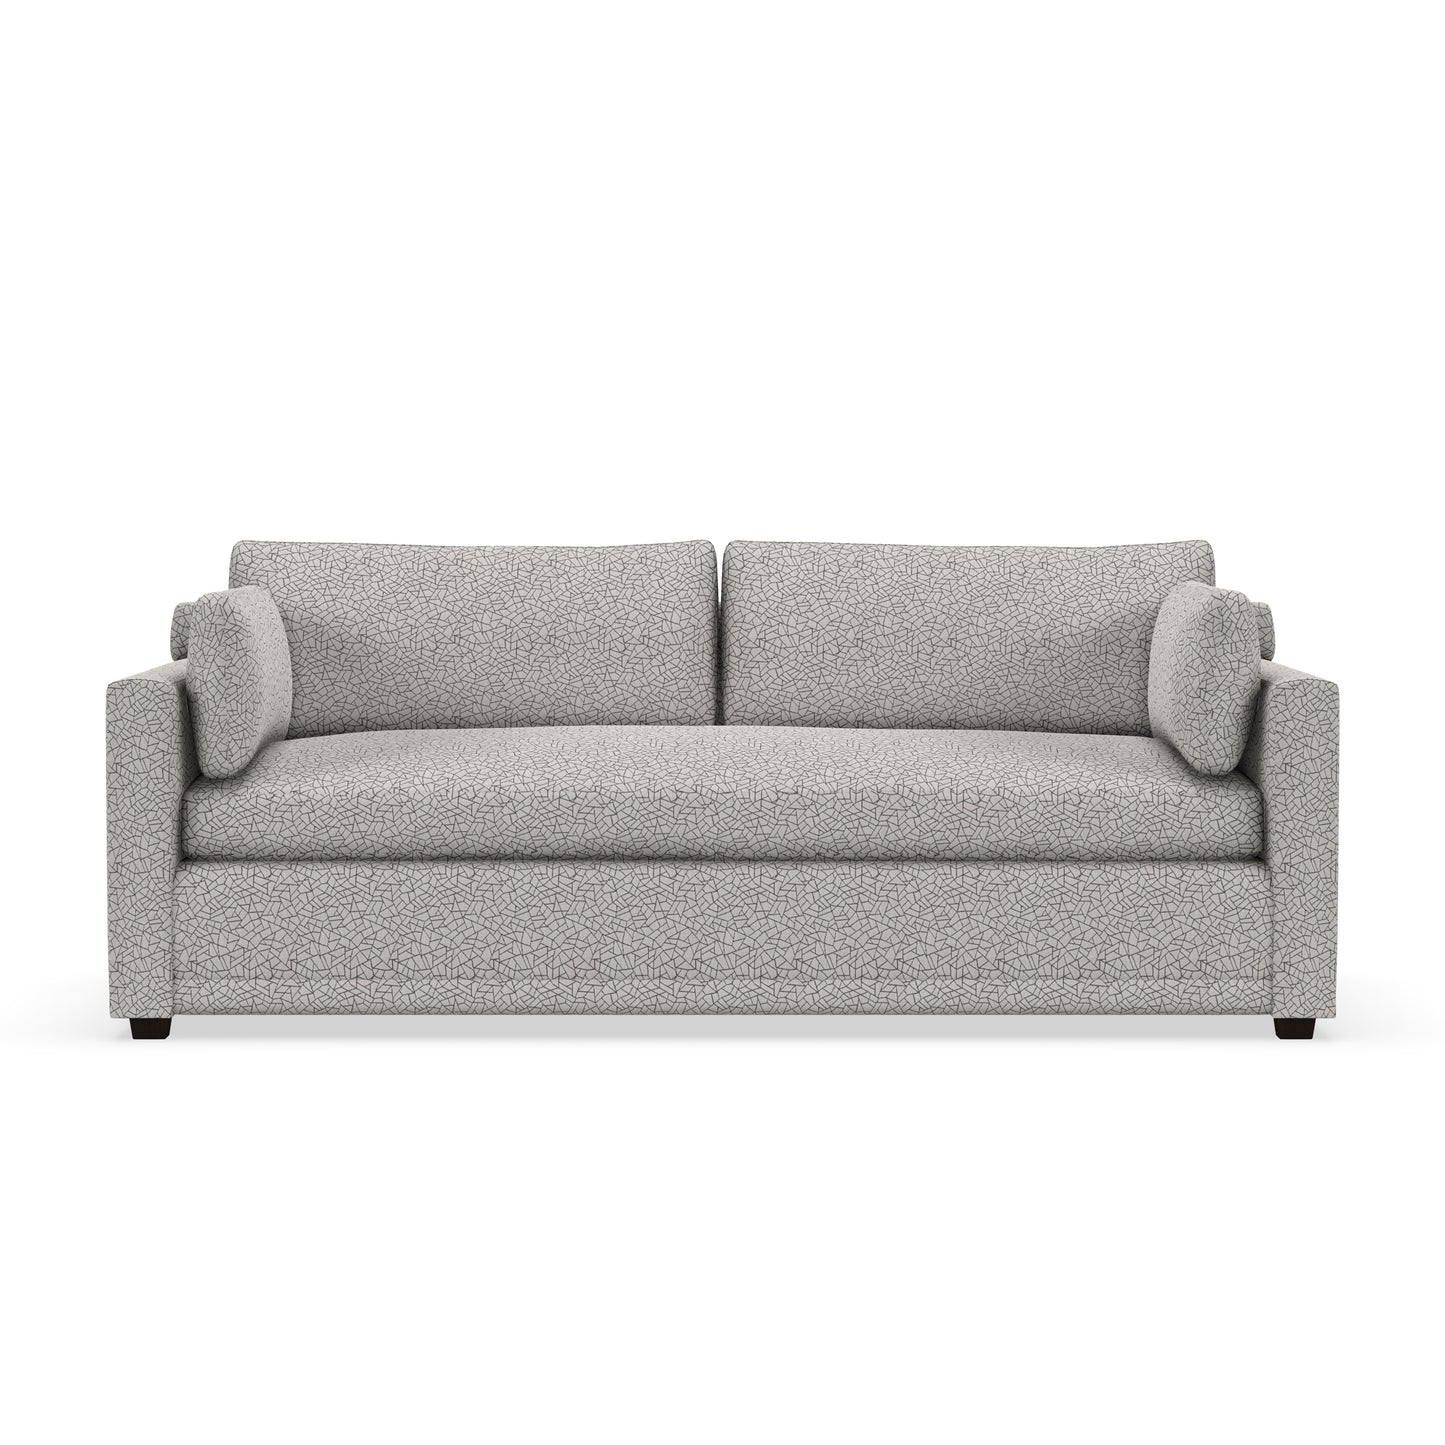 Sylvester Bench Seat Sofa